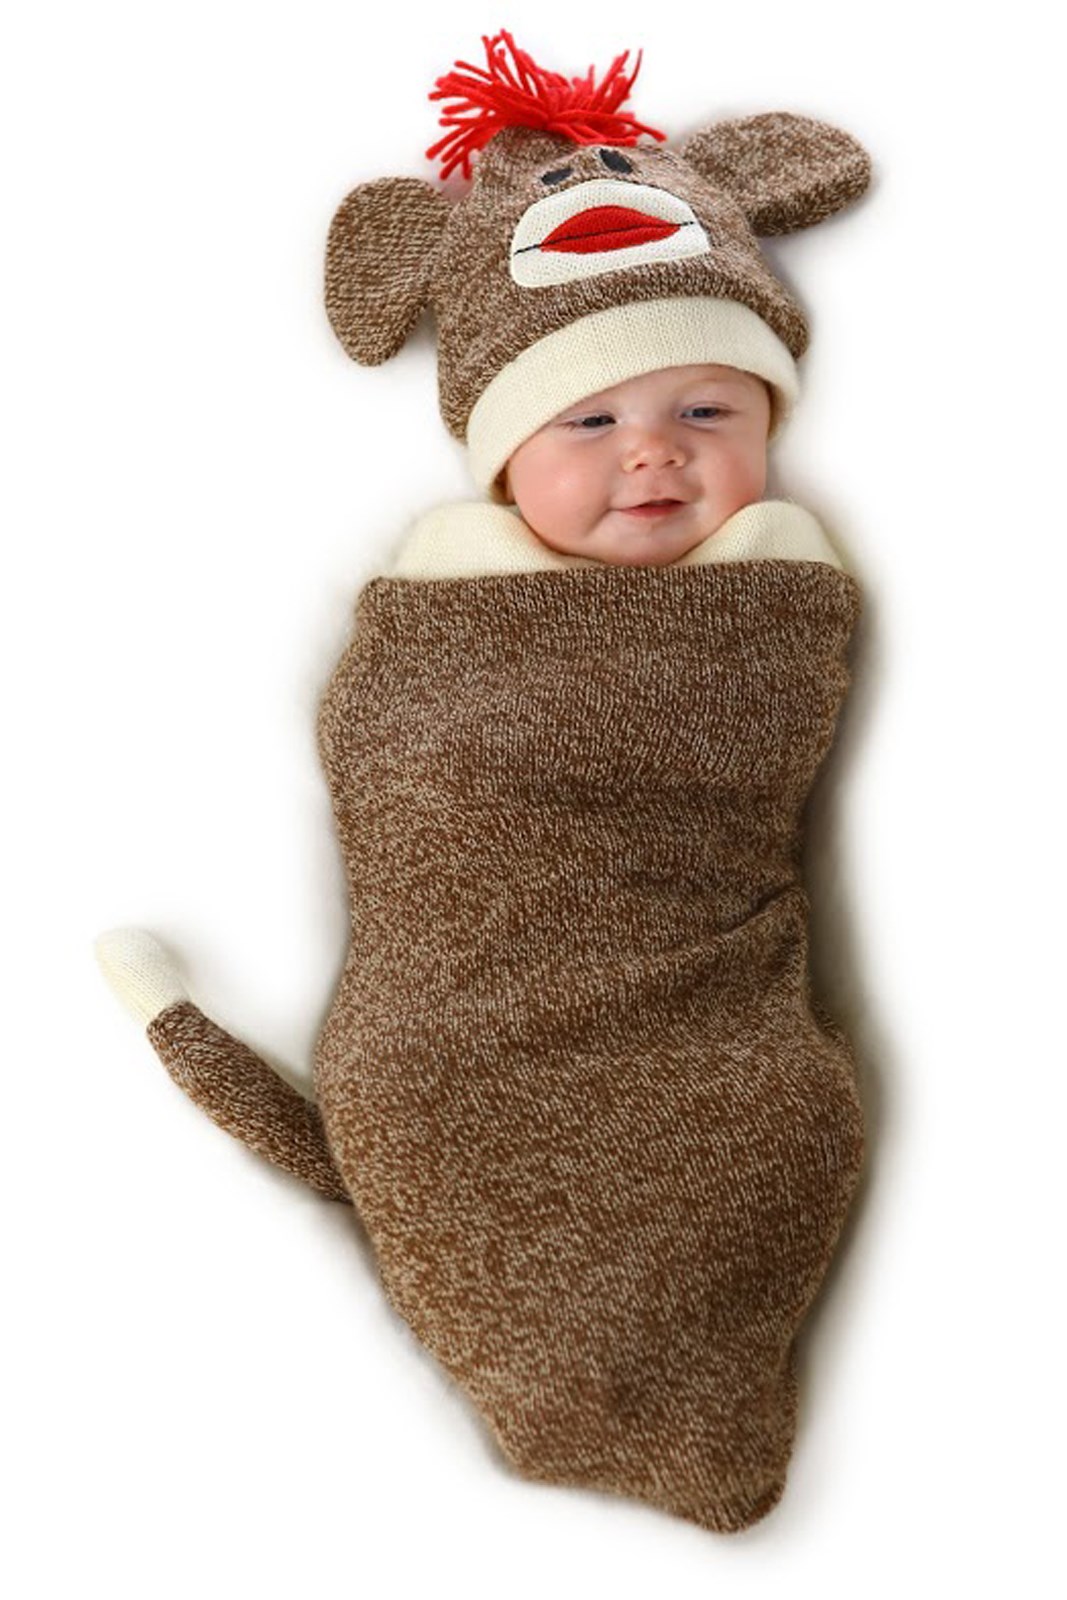 Marv the Monkey Infant Bunting Costume